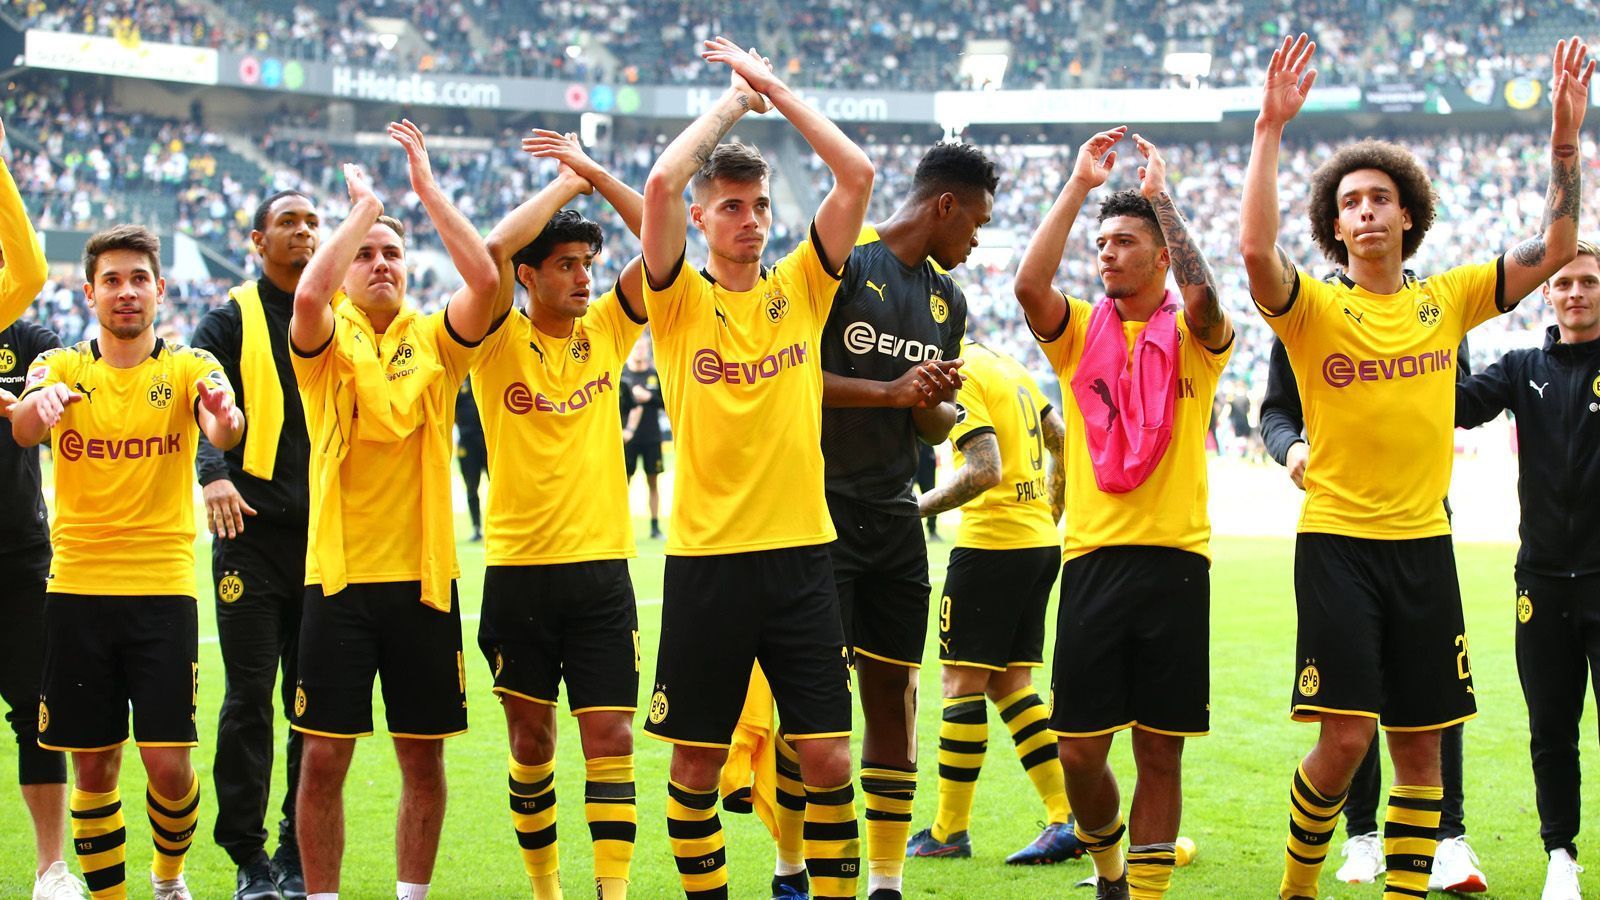 
                <strong>Das verdienen die BVB-Stars in der Saison 2019/2020</strong><br>
                Borussia Dortmund war im Sommer fleißig auf dem Transfermarkt tätig und hat einige neue Spieler geholt. Neben den meist öffentlich bekannten Transfersummen, müssen die Spieler natürlich auch bezahlt werden. Das hat seinen Preis! Insgesamt bezahlt Dortmund 138,15 Millionen Euro an Gehältern. ran.de zeigt euch, welcher BVB-Spieler in der Saison 2019/2020 das höchste Gehalt bezieht (Quelle "Bild").
              